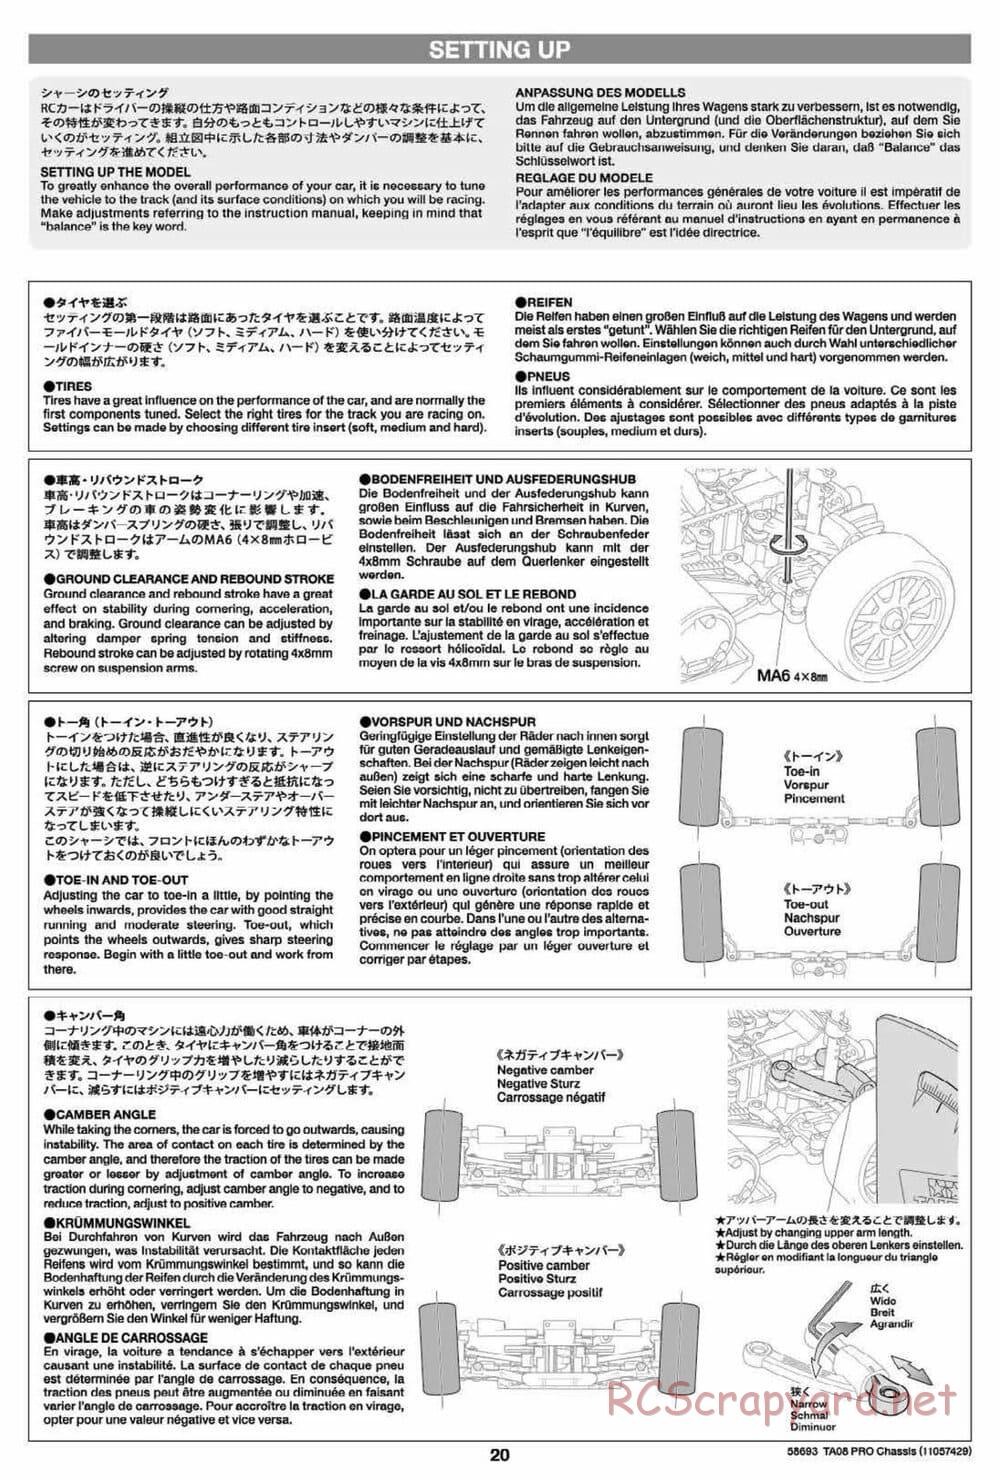 Tamiya - TA08 Pro Chassis - Manual - Page 20